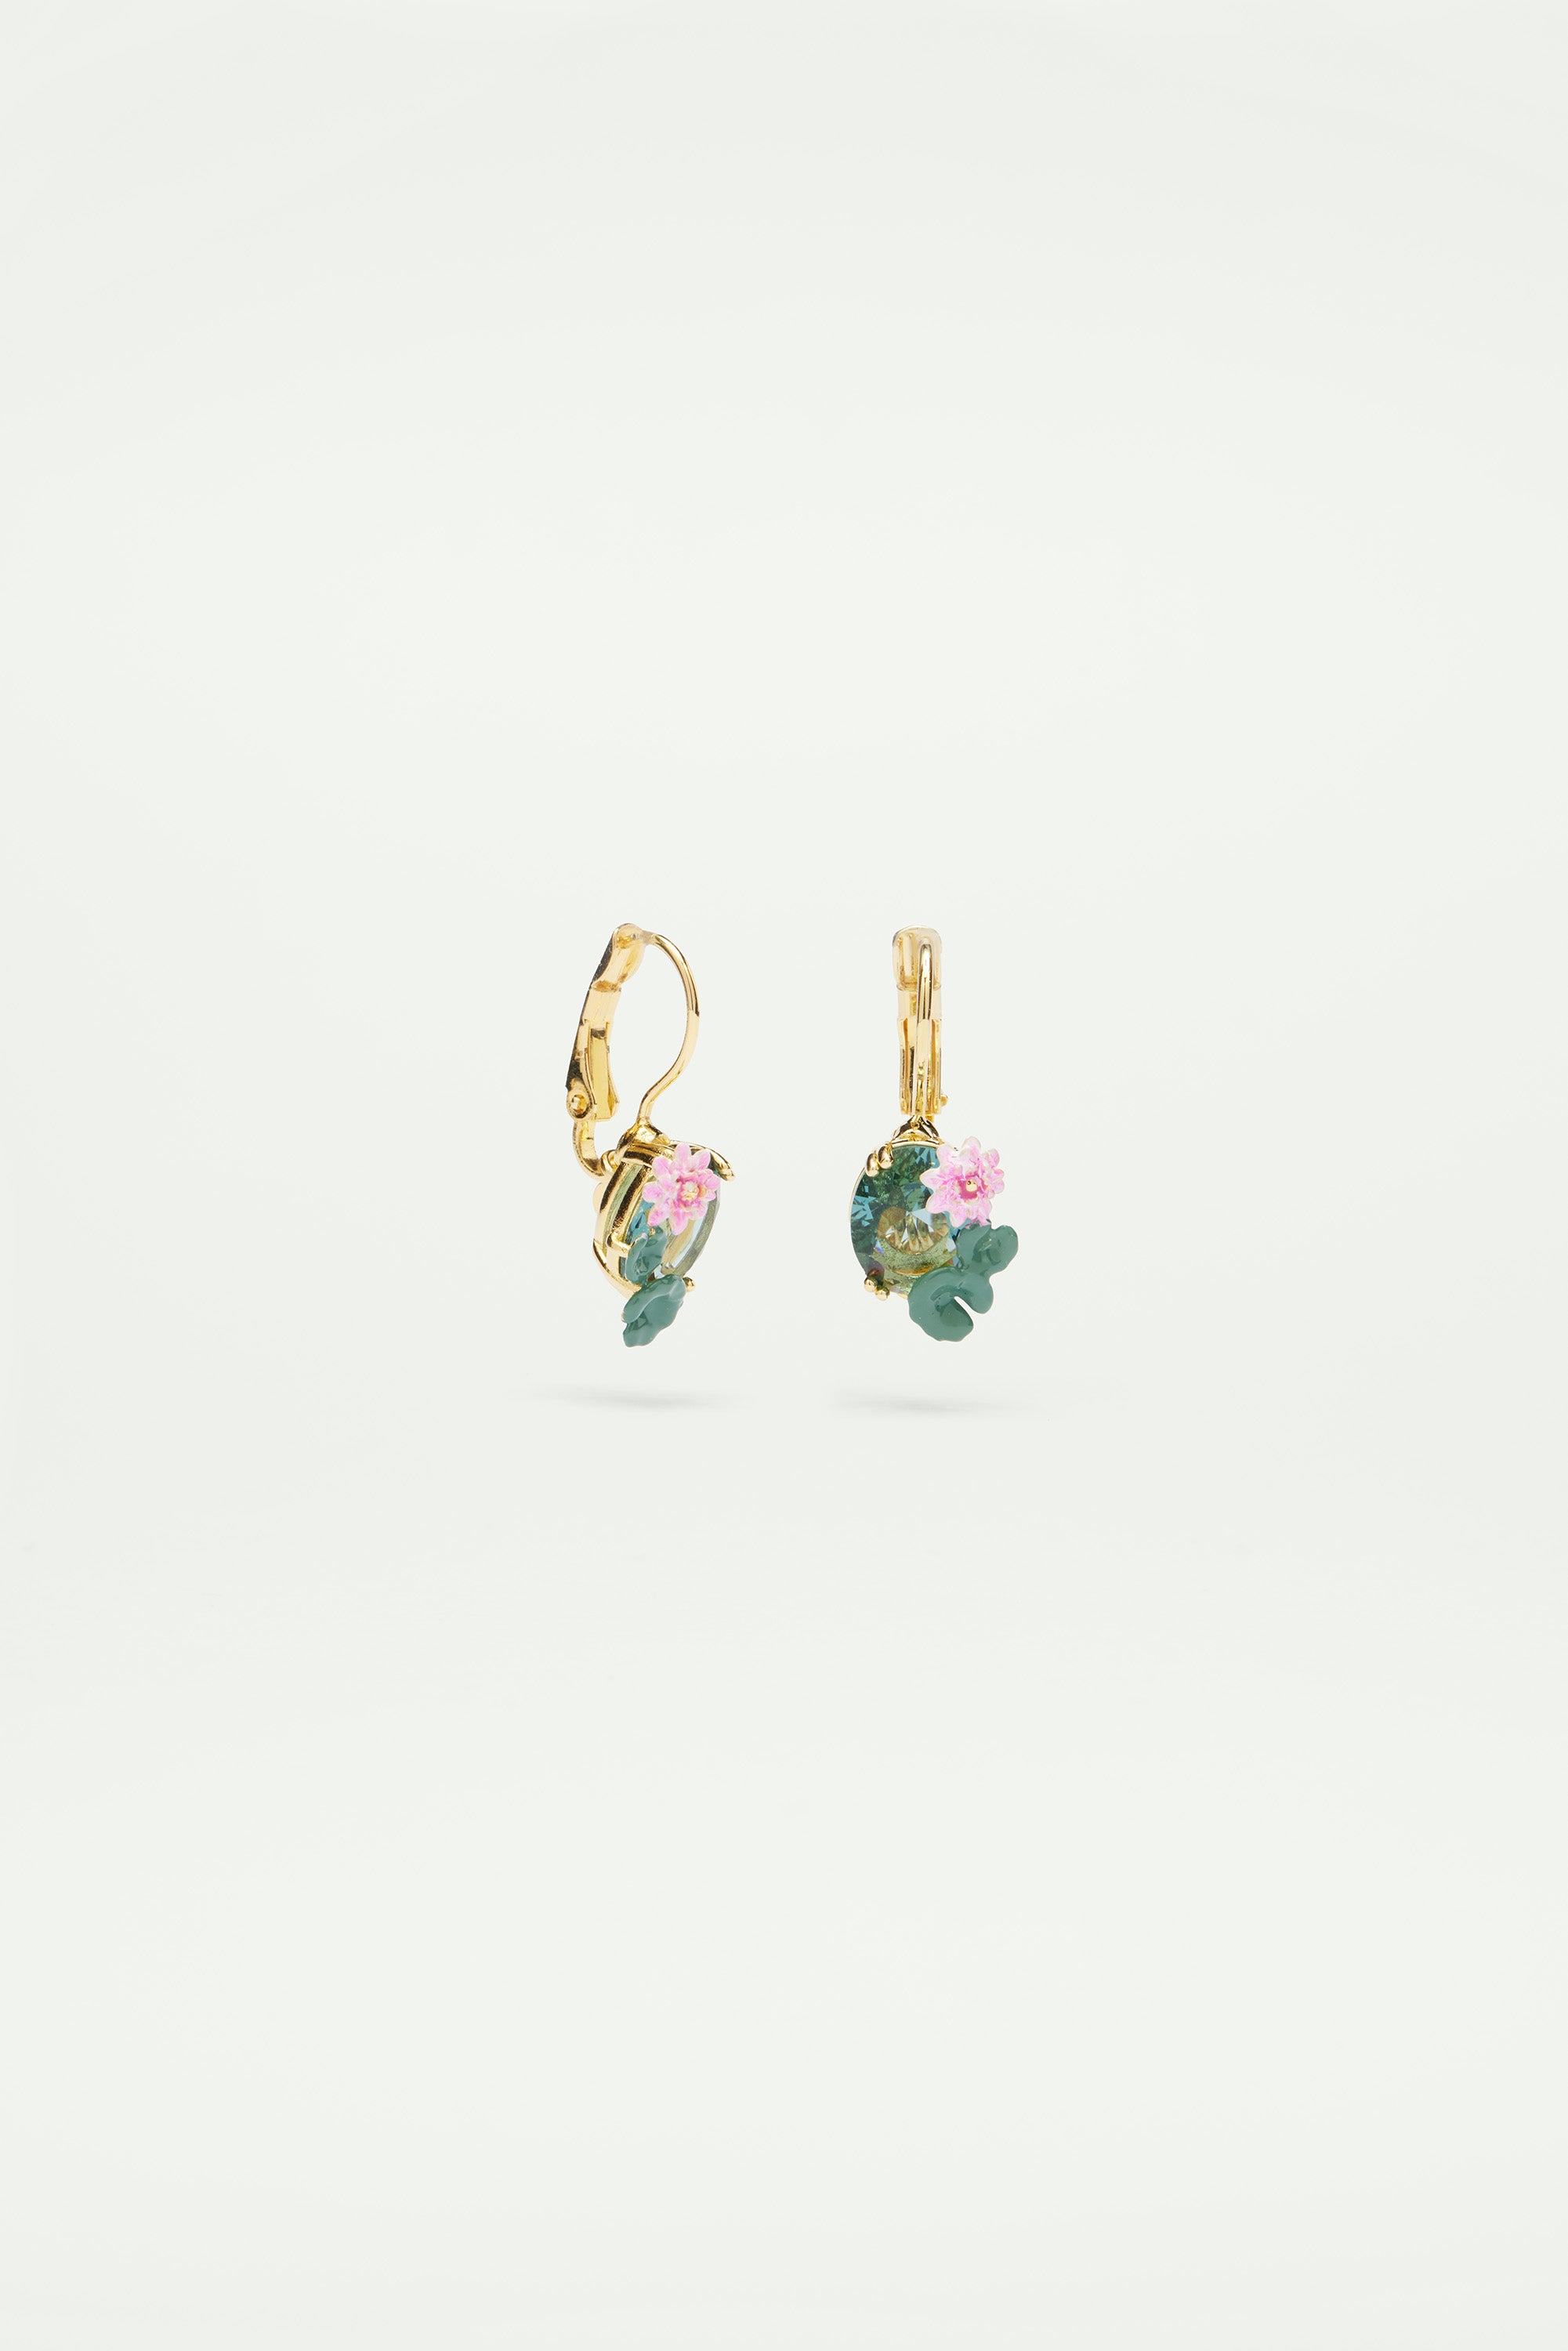 Lotus flower and blue stone sleeper earrings